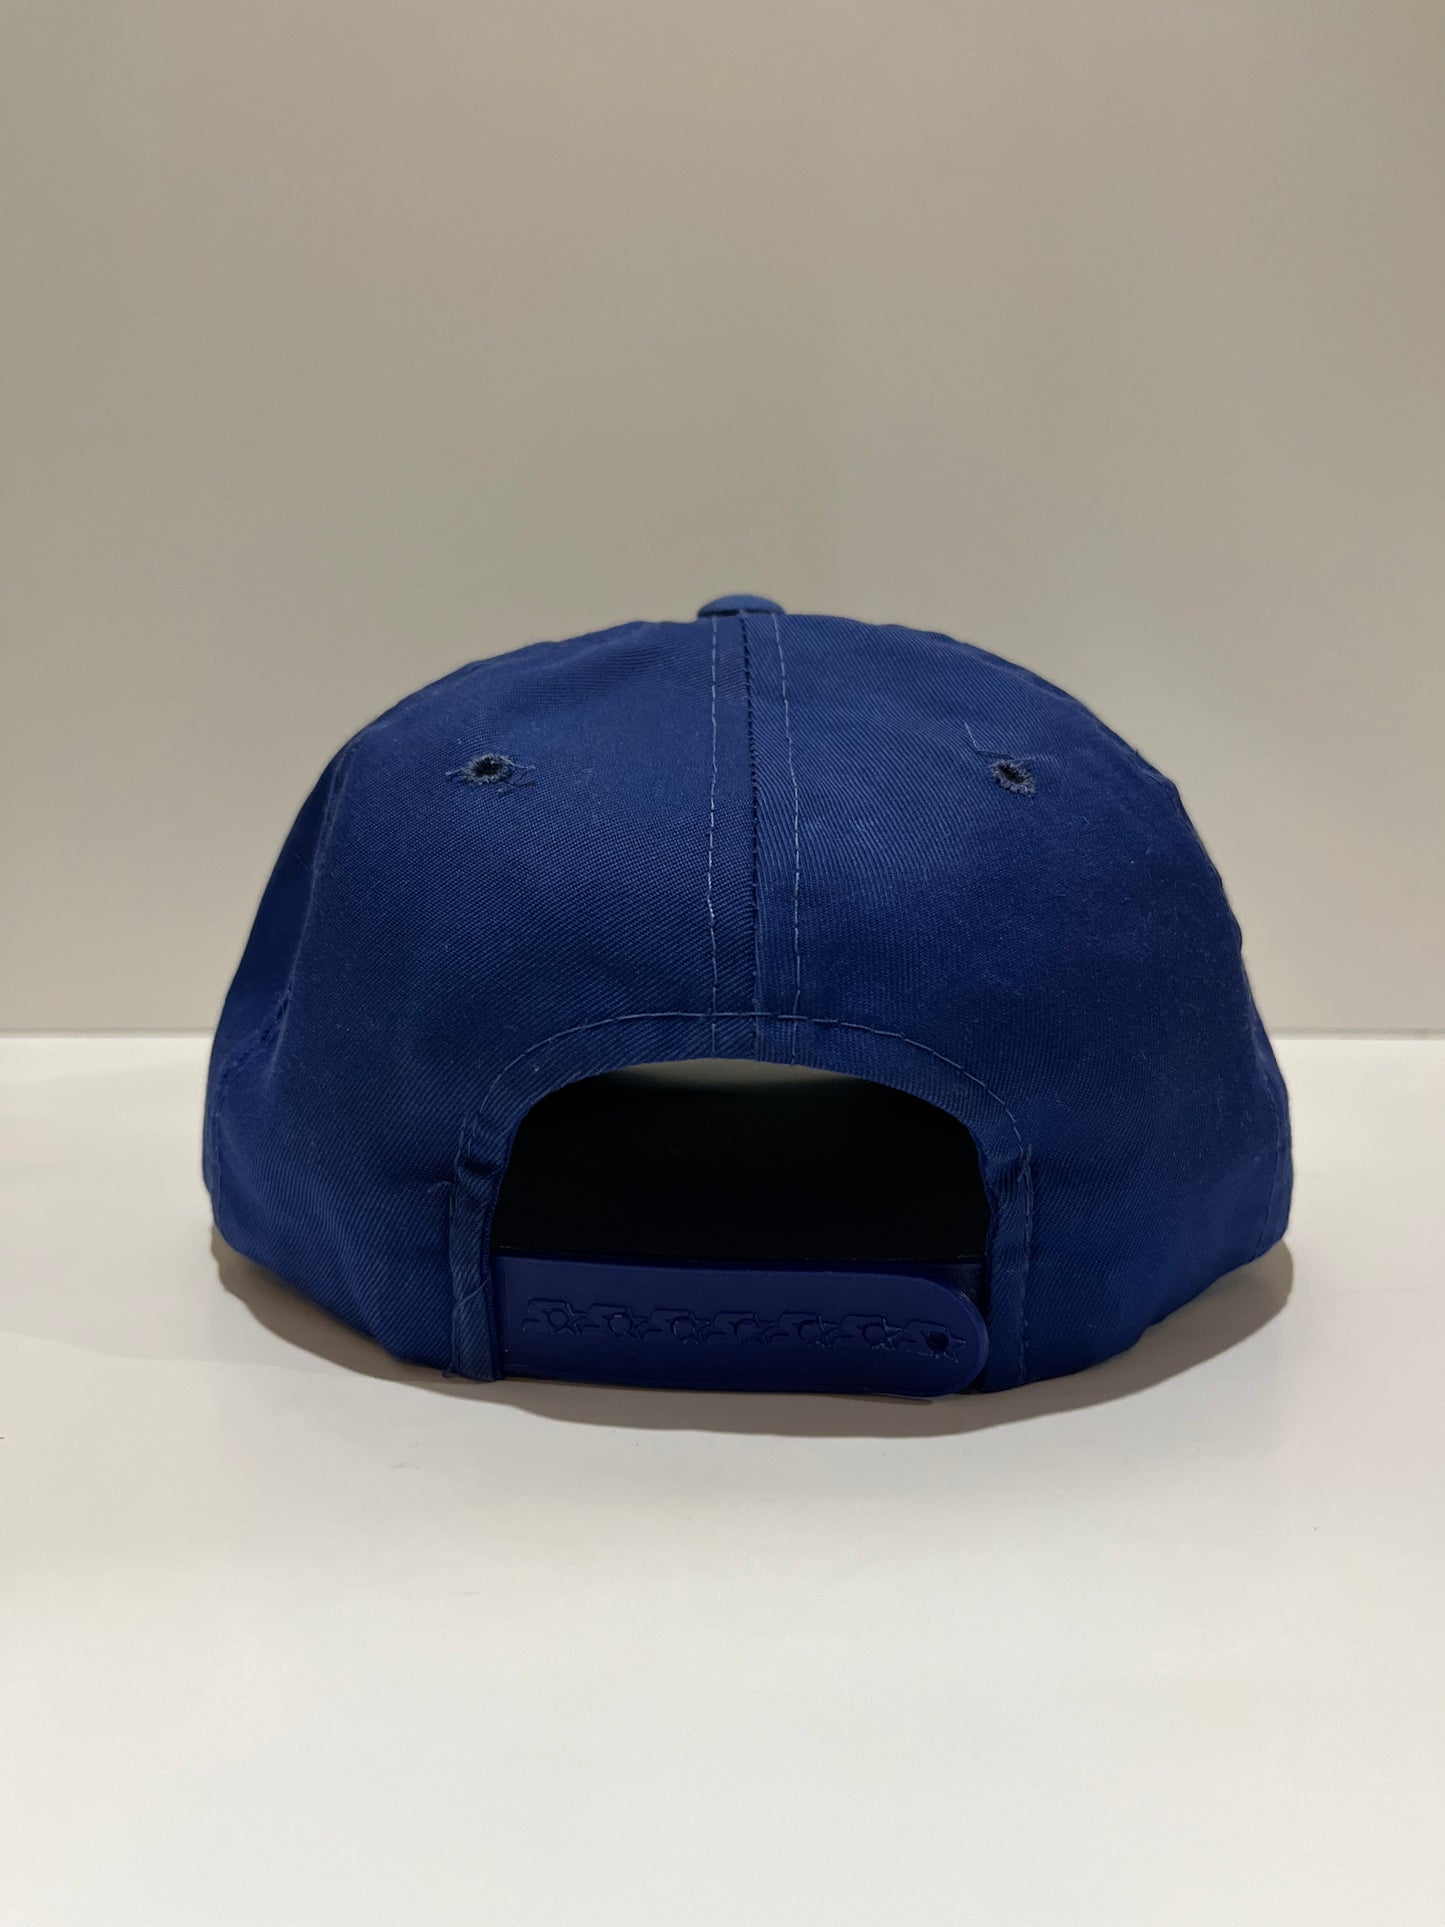 Vintage Starter Blue Jays Snapback Hat